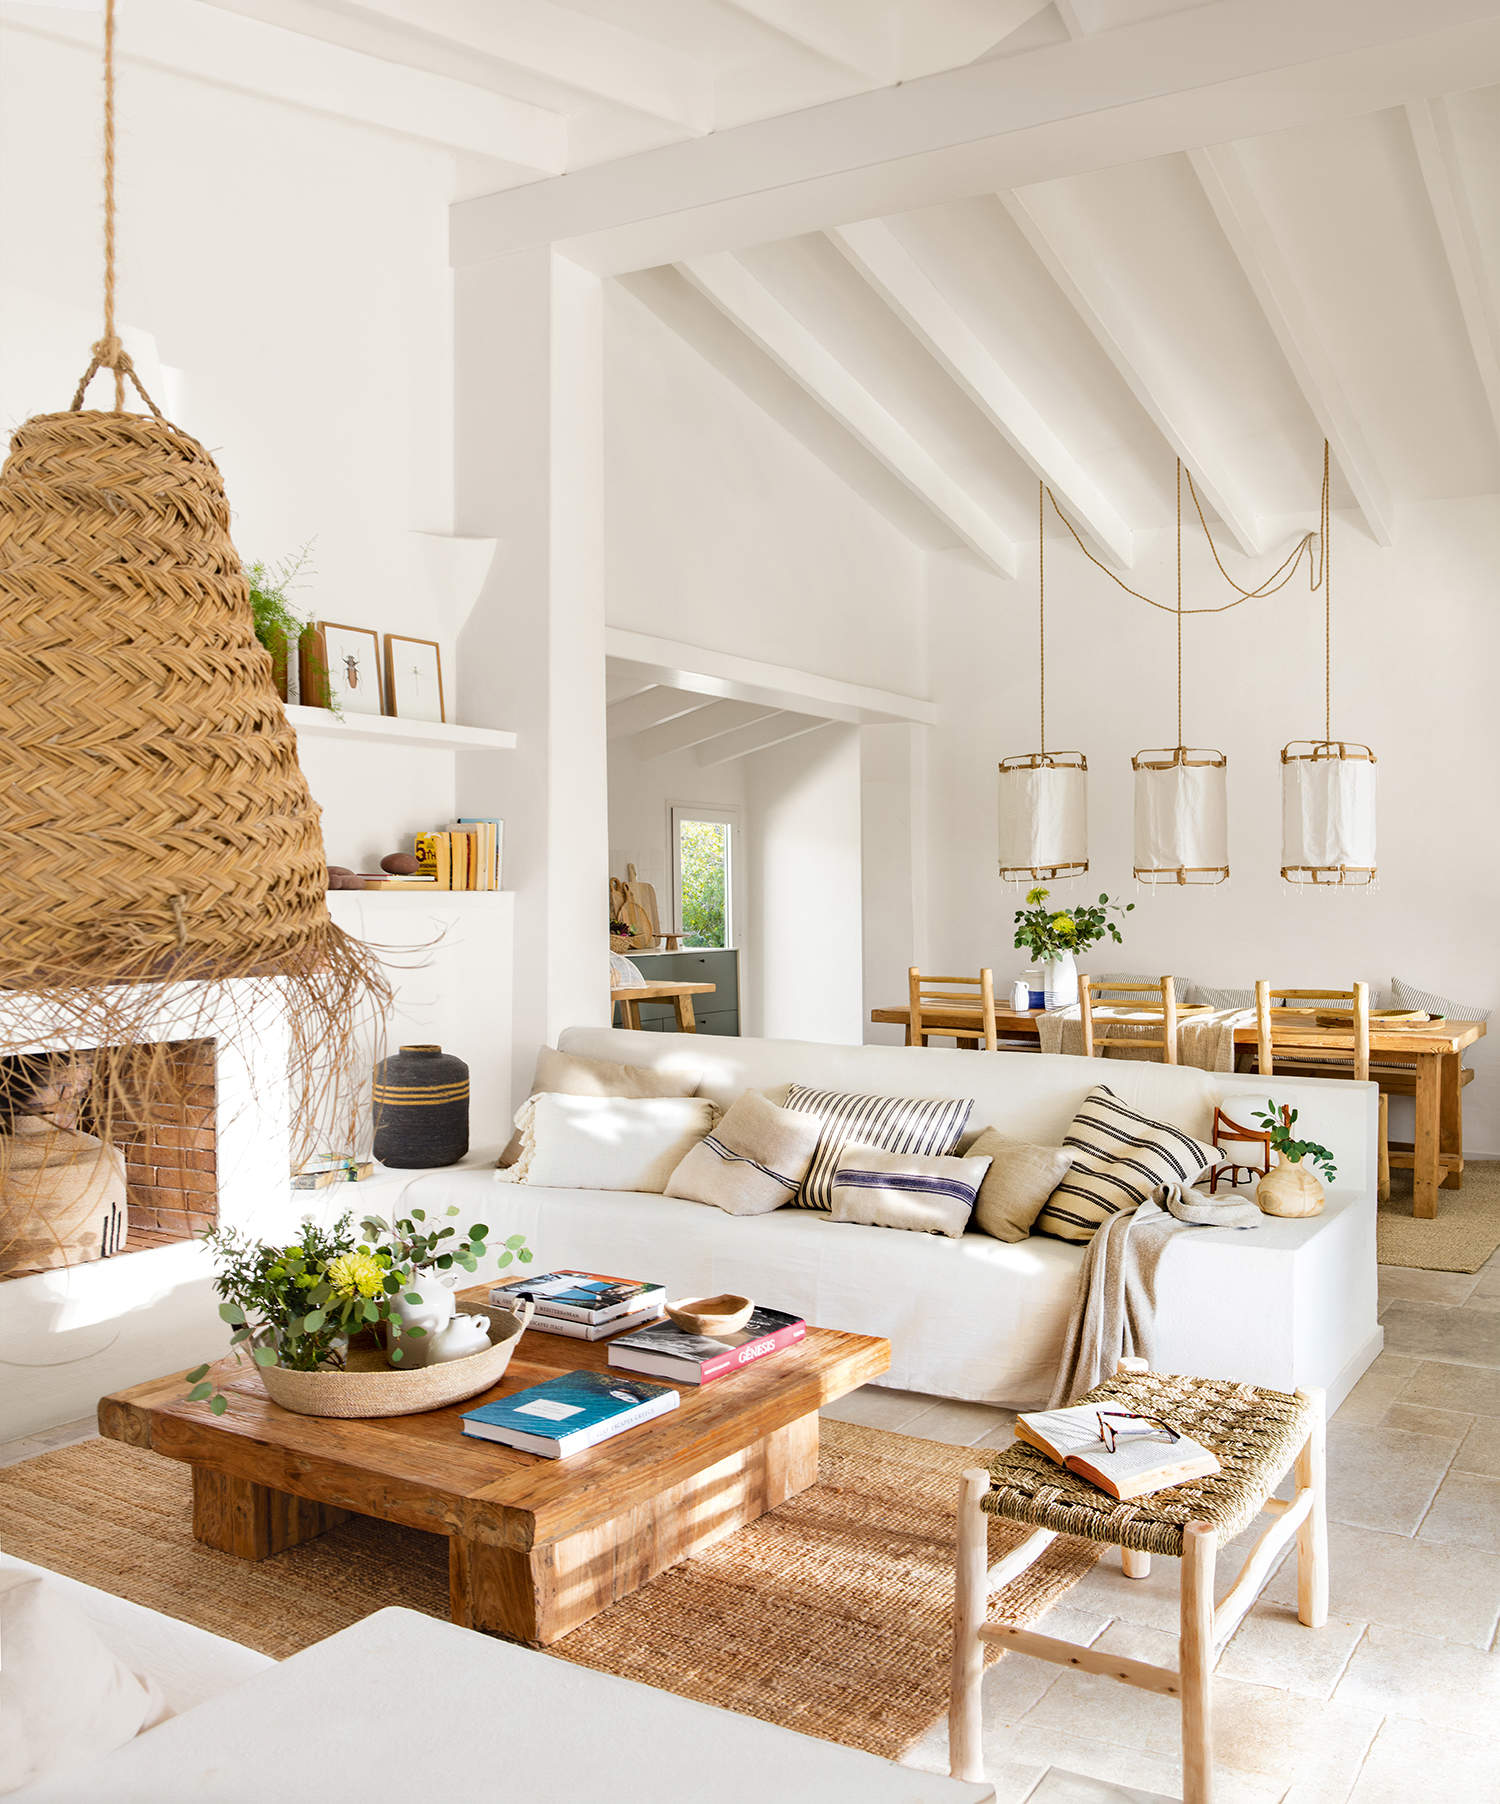 Salón de verano blanco con muebles de madera y detalles en fibra natural.